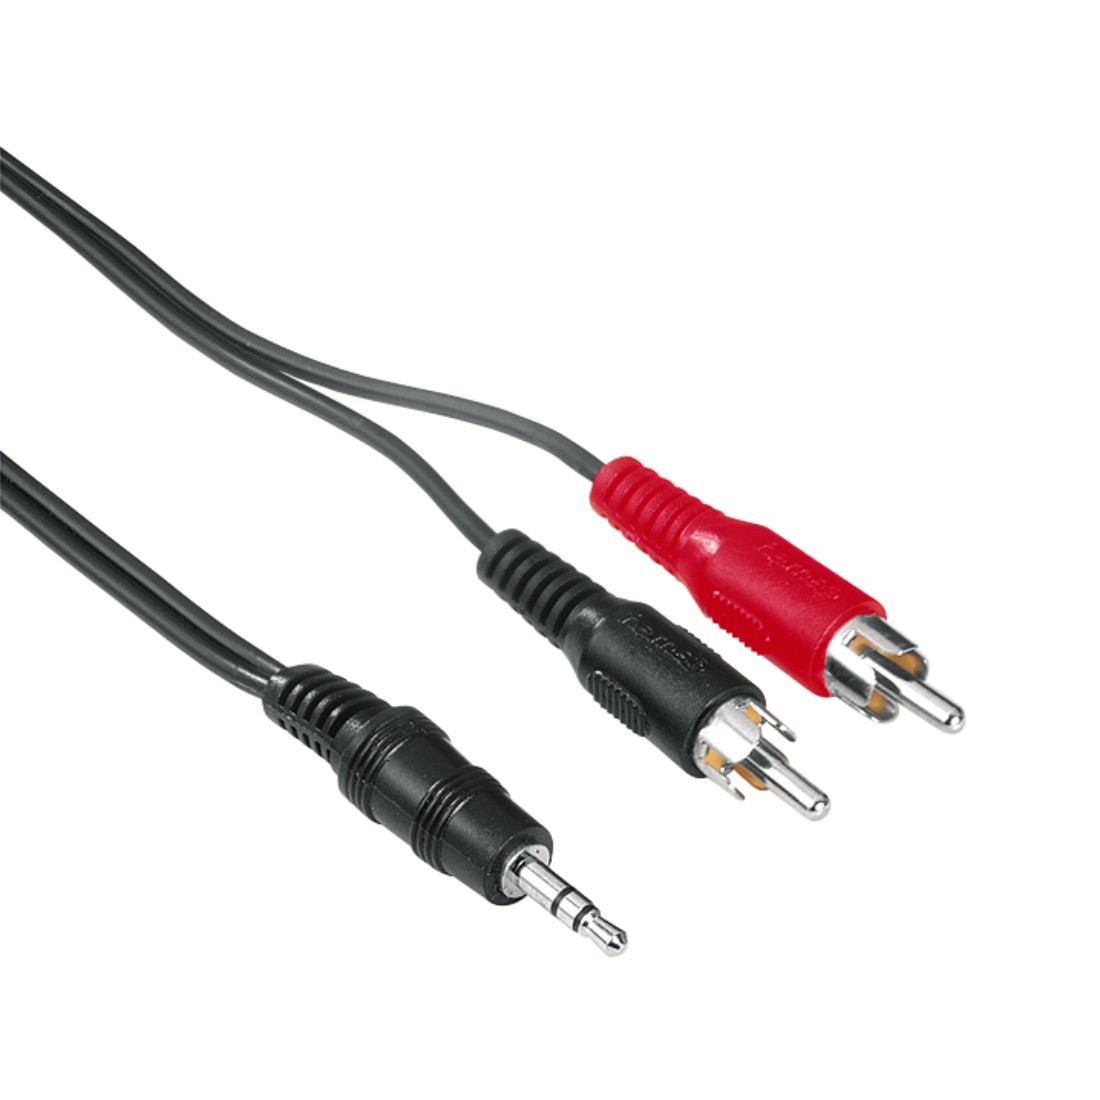 ecabo Câble stéréo jack 3,5mm à deux fiches RCA 1,5m – fiche RCA (rouge/ blanc) à jack 3,5mm – Câble en Y – noir – pour Hi-Fi, système stéréo,  récepteurs, équipement audio 